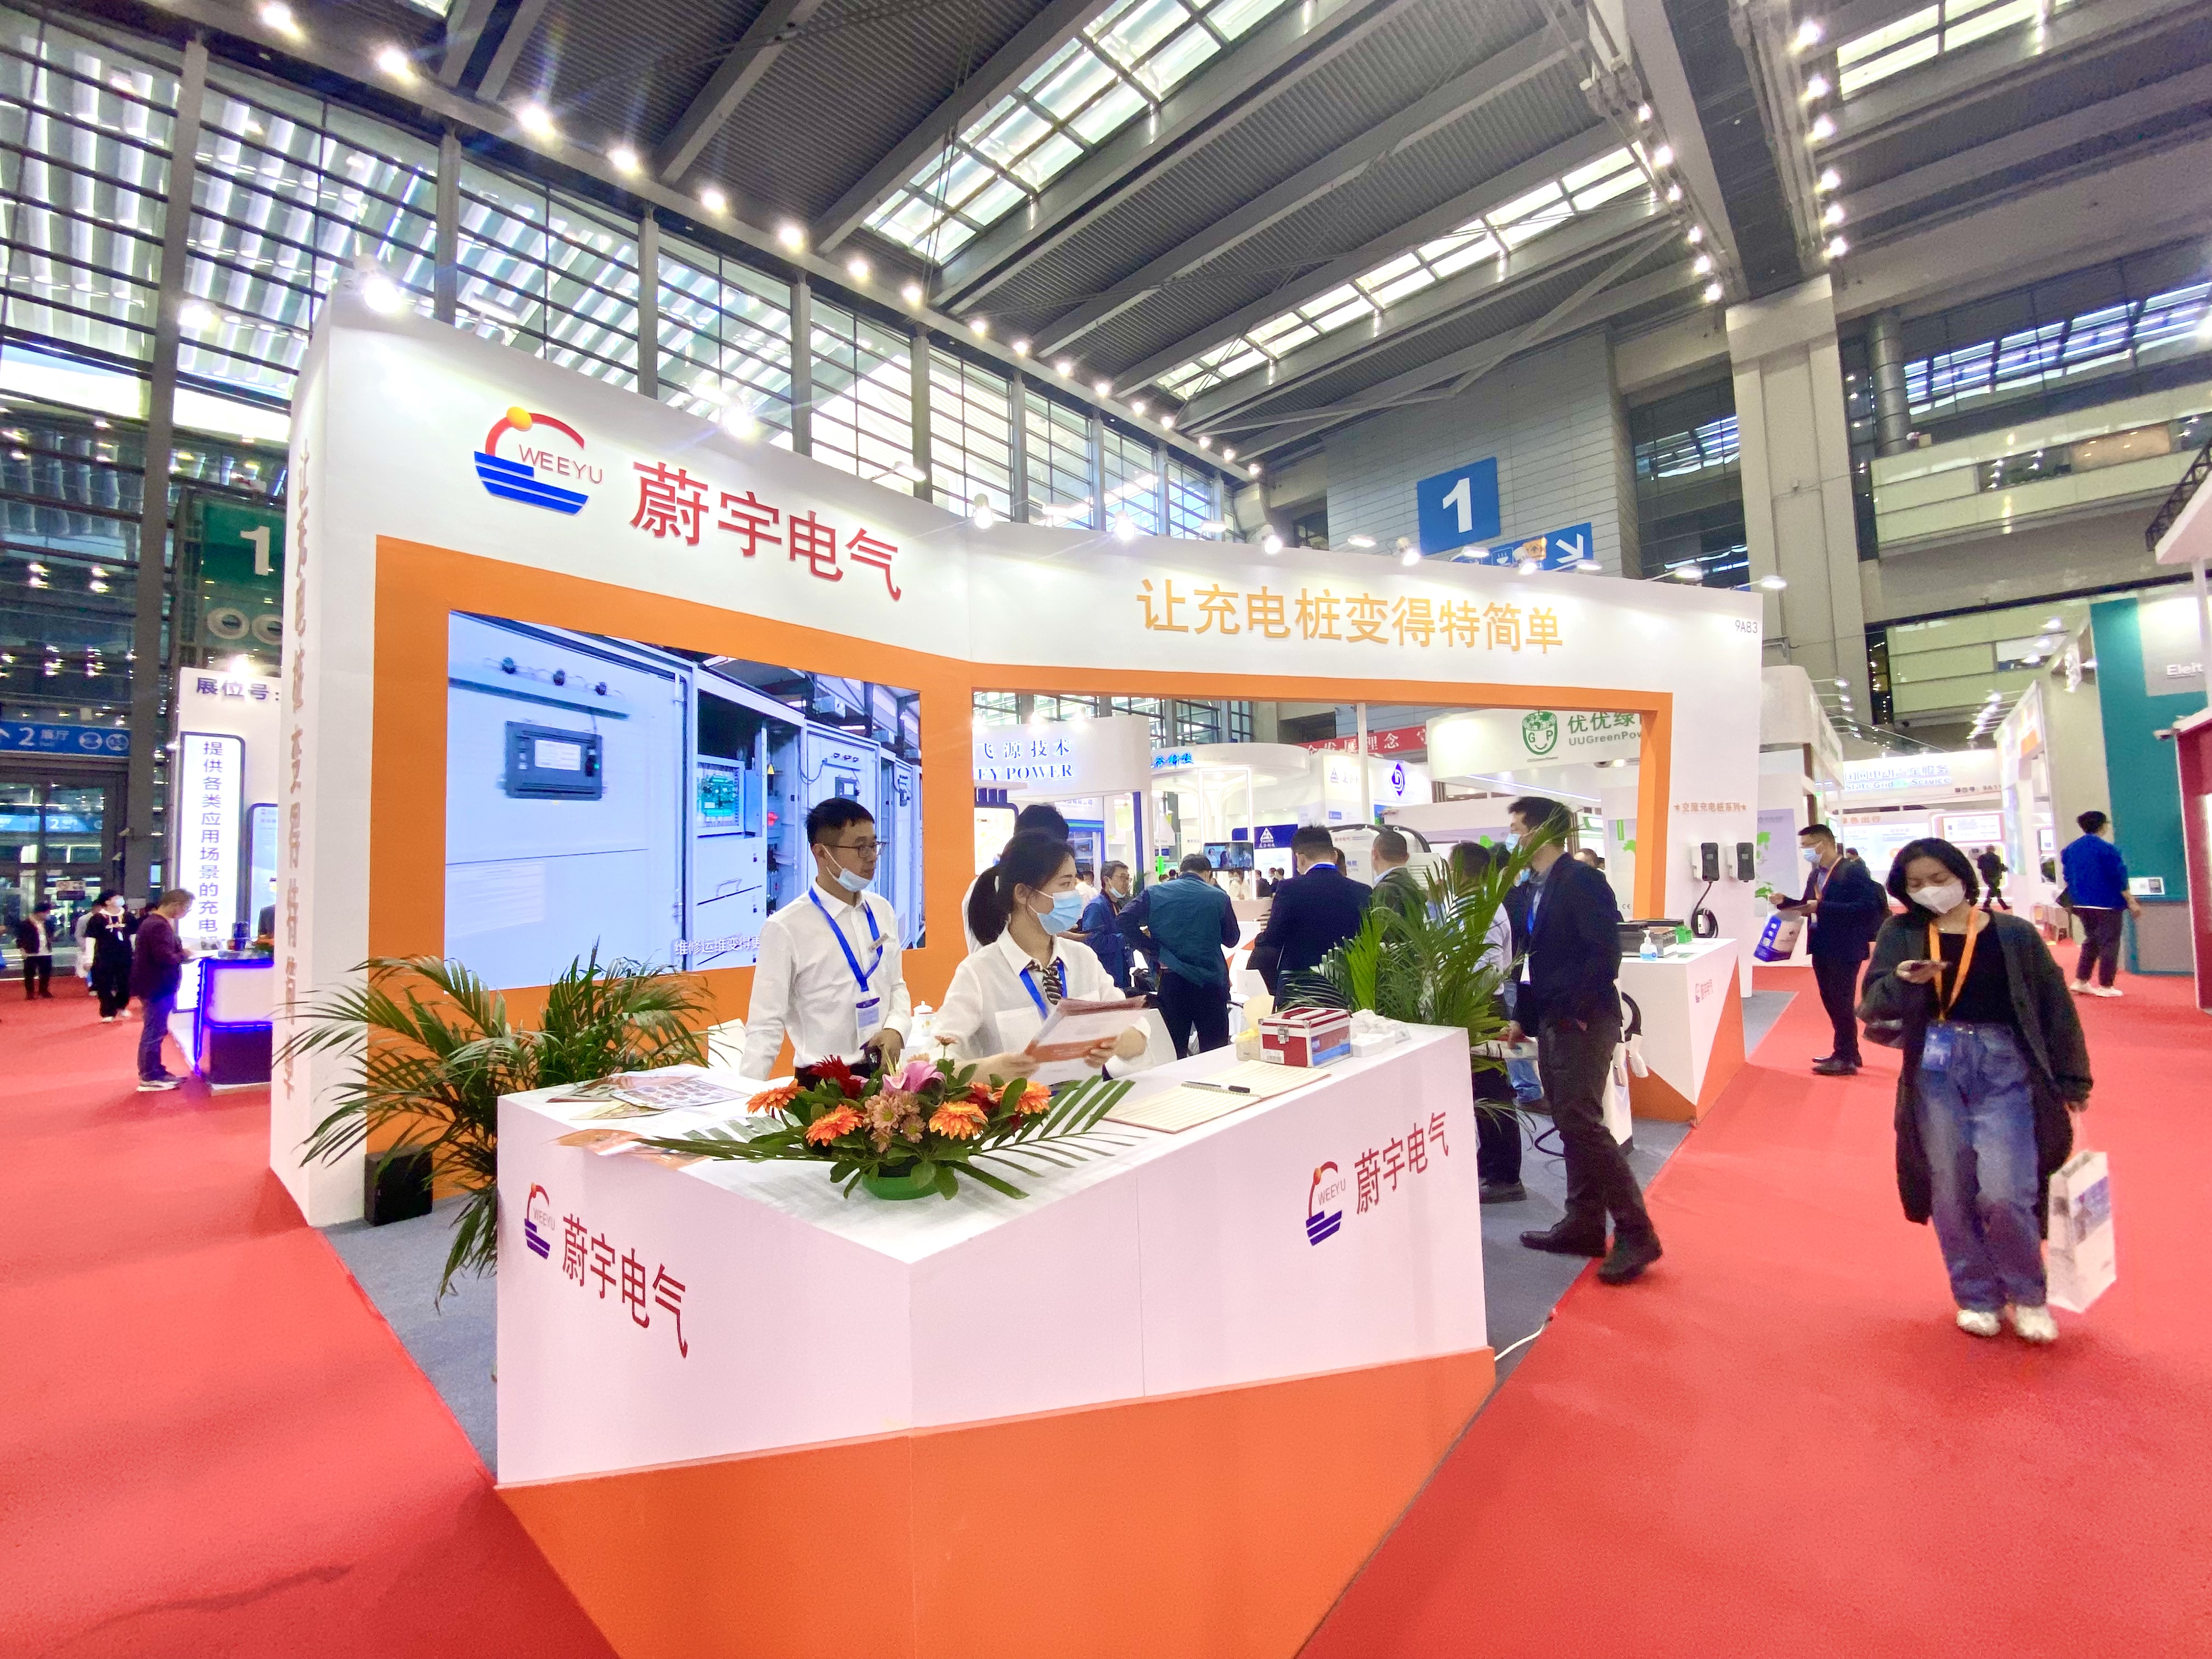 Weeyu Electric brilha na exposição internacional de equipamentos de tecnologia de pilha de estação de carregamento de Shenzhen